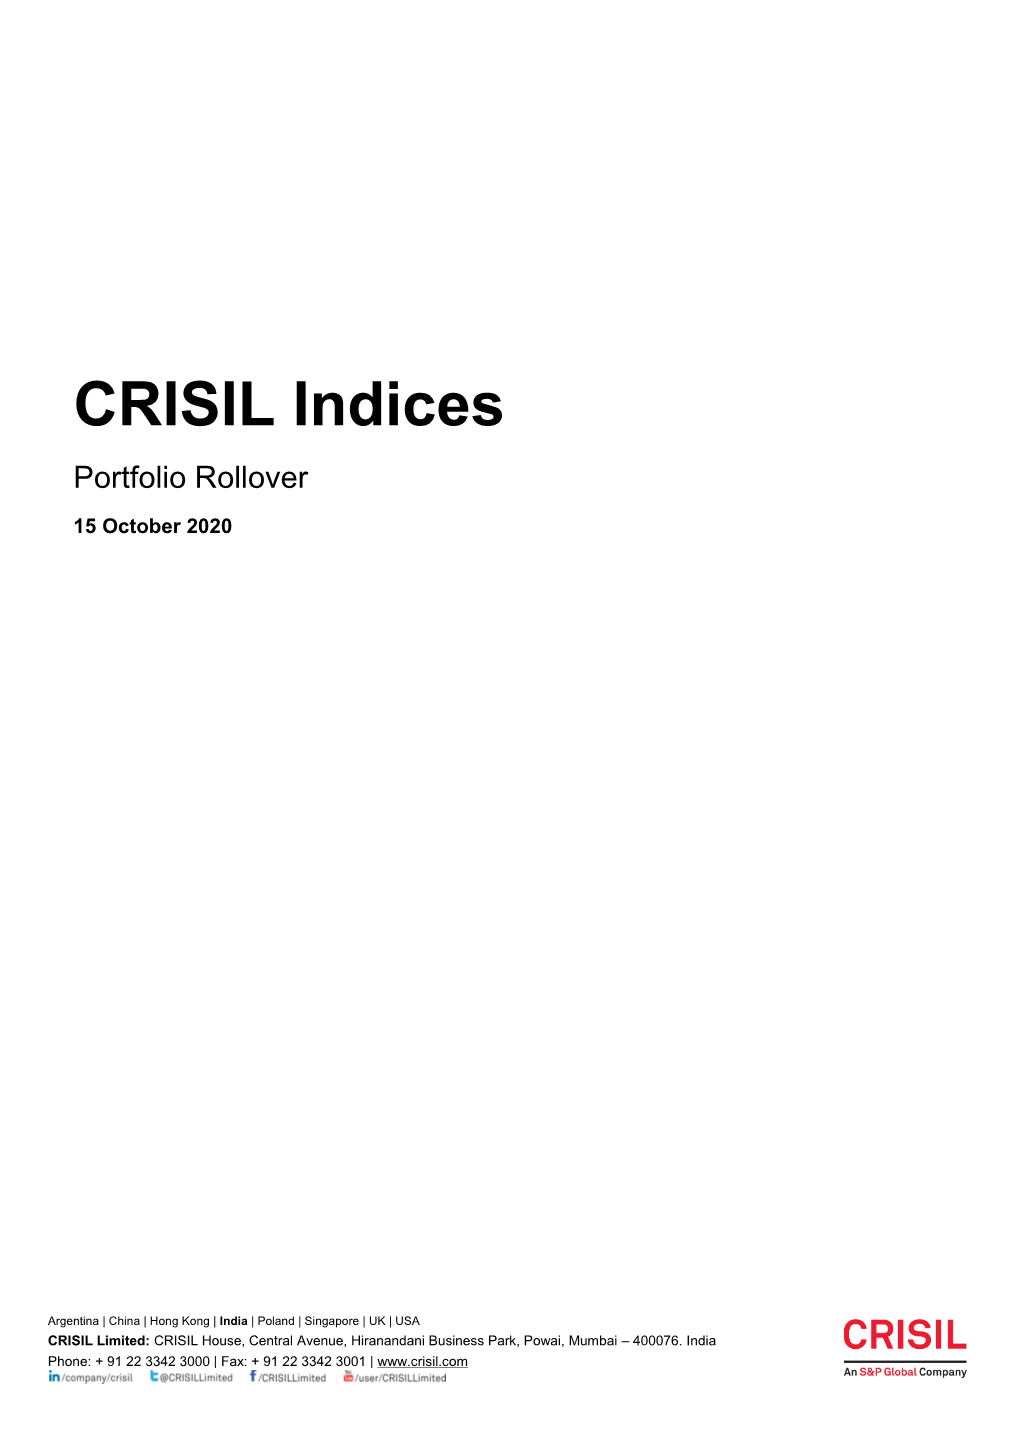 CRISIL Indices Portfolio Rollover